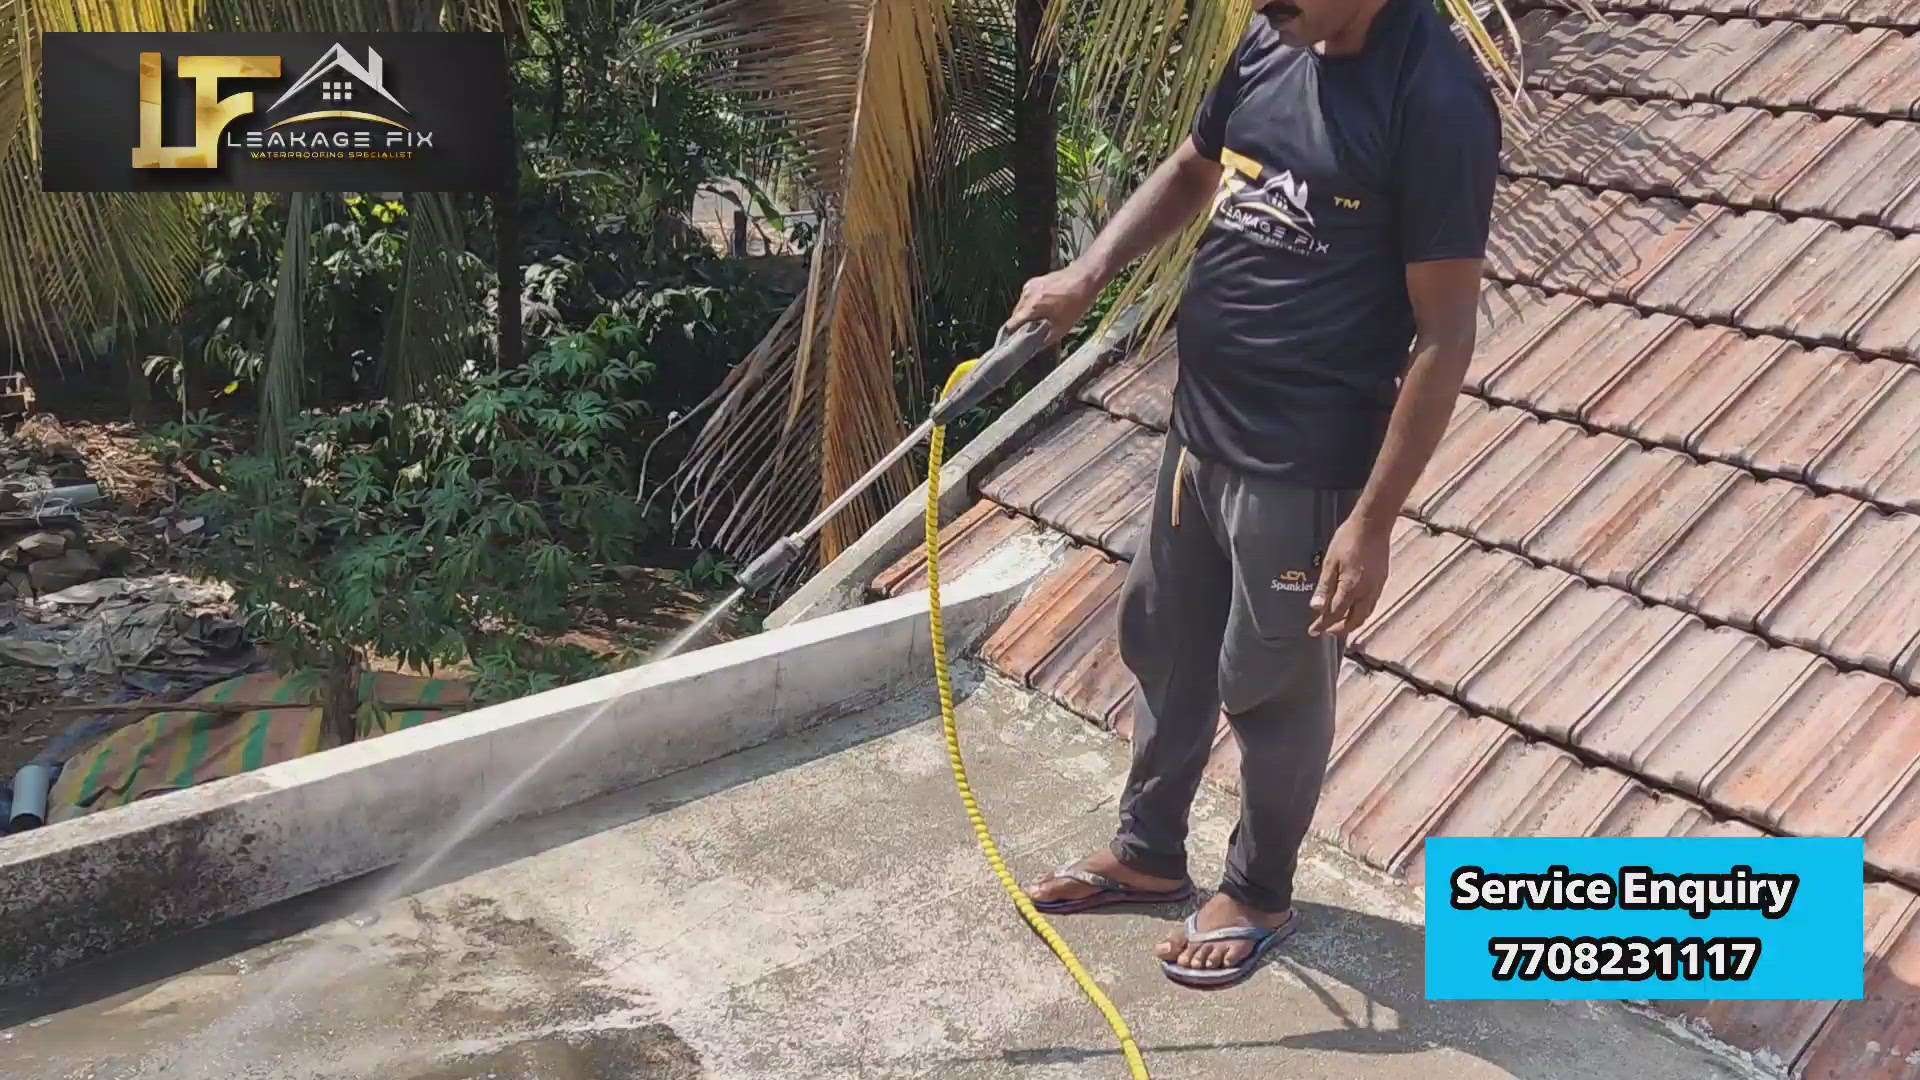 Leakage Fix #WaterProofings #homecare #buildcare ₹damsure